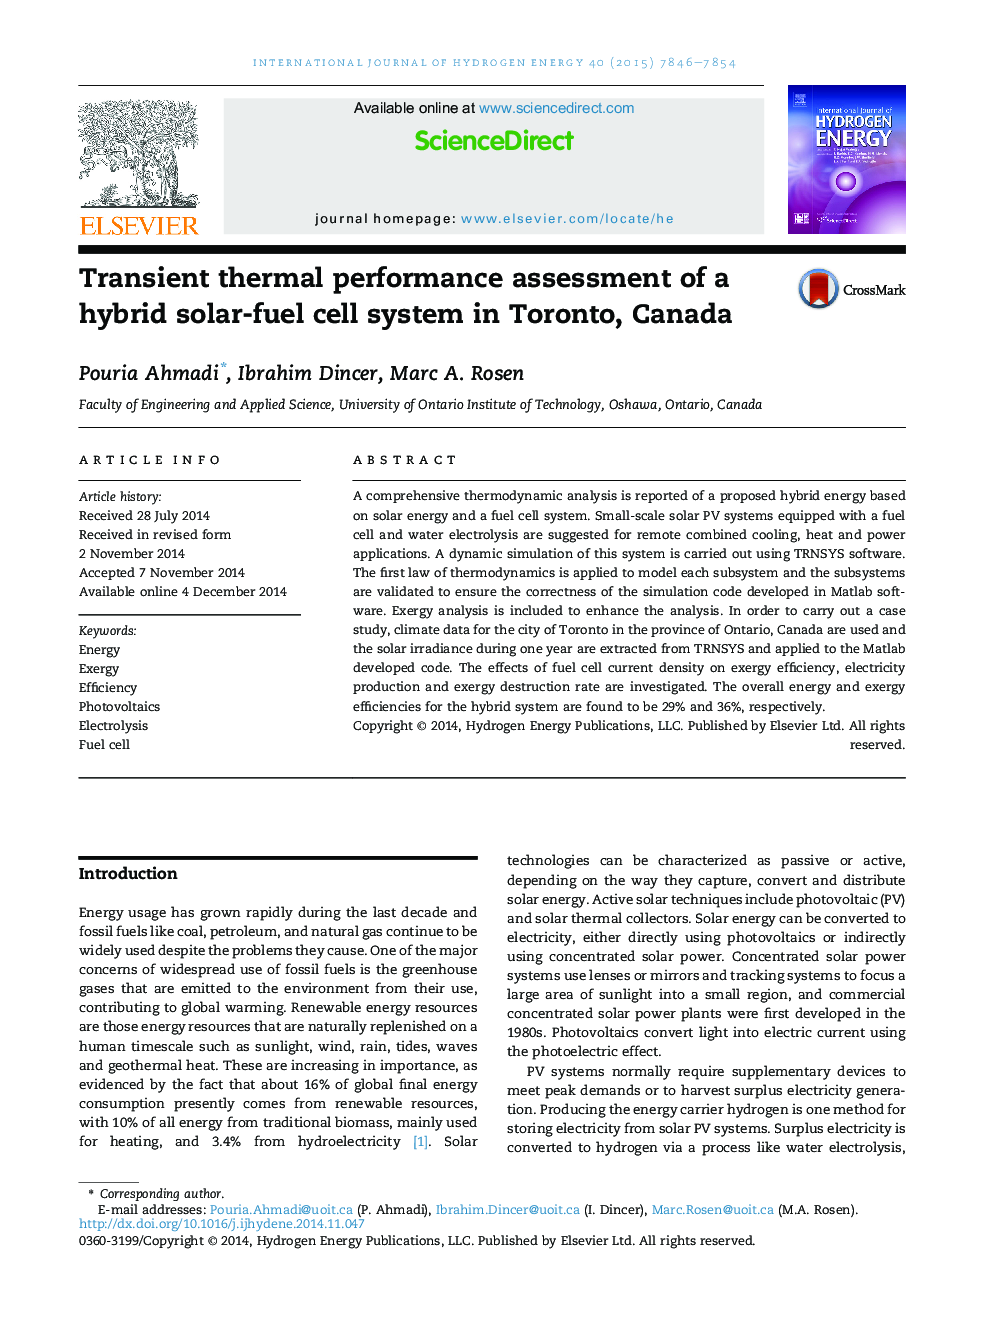 ارزیابی عملکرد حرارتی ترانزیت یک سیستم سلول خورشیدی ترکیبی در تورنتو، کانادا 